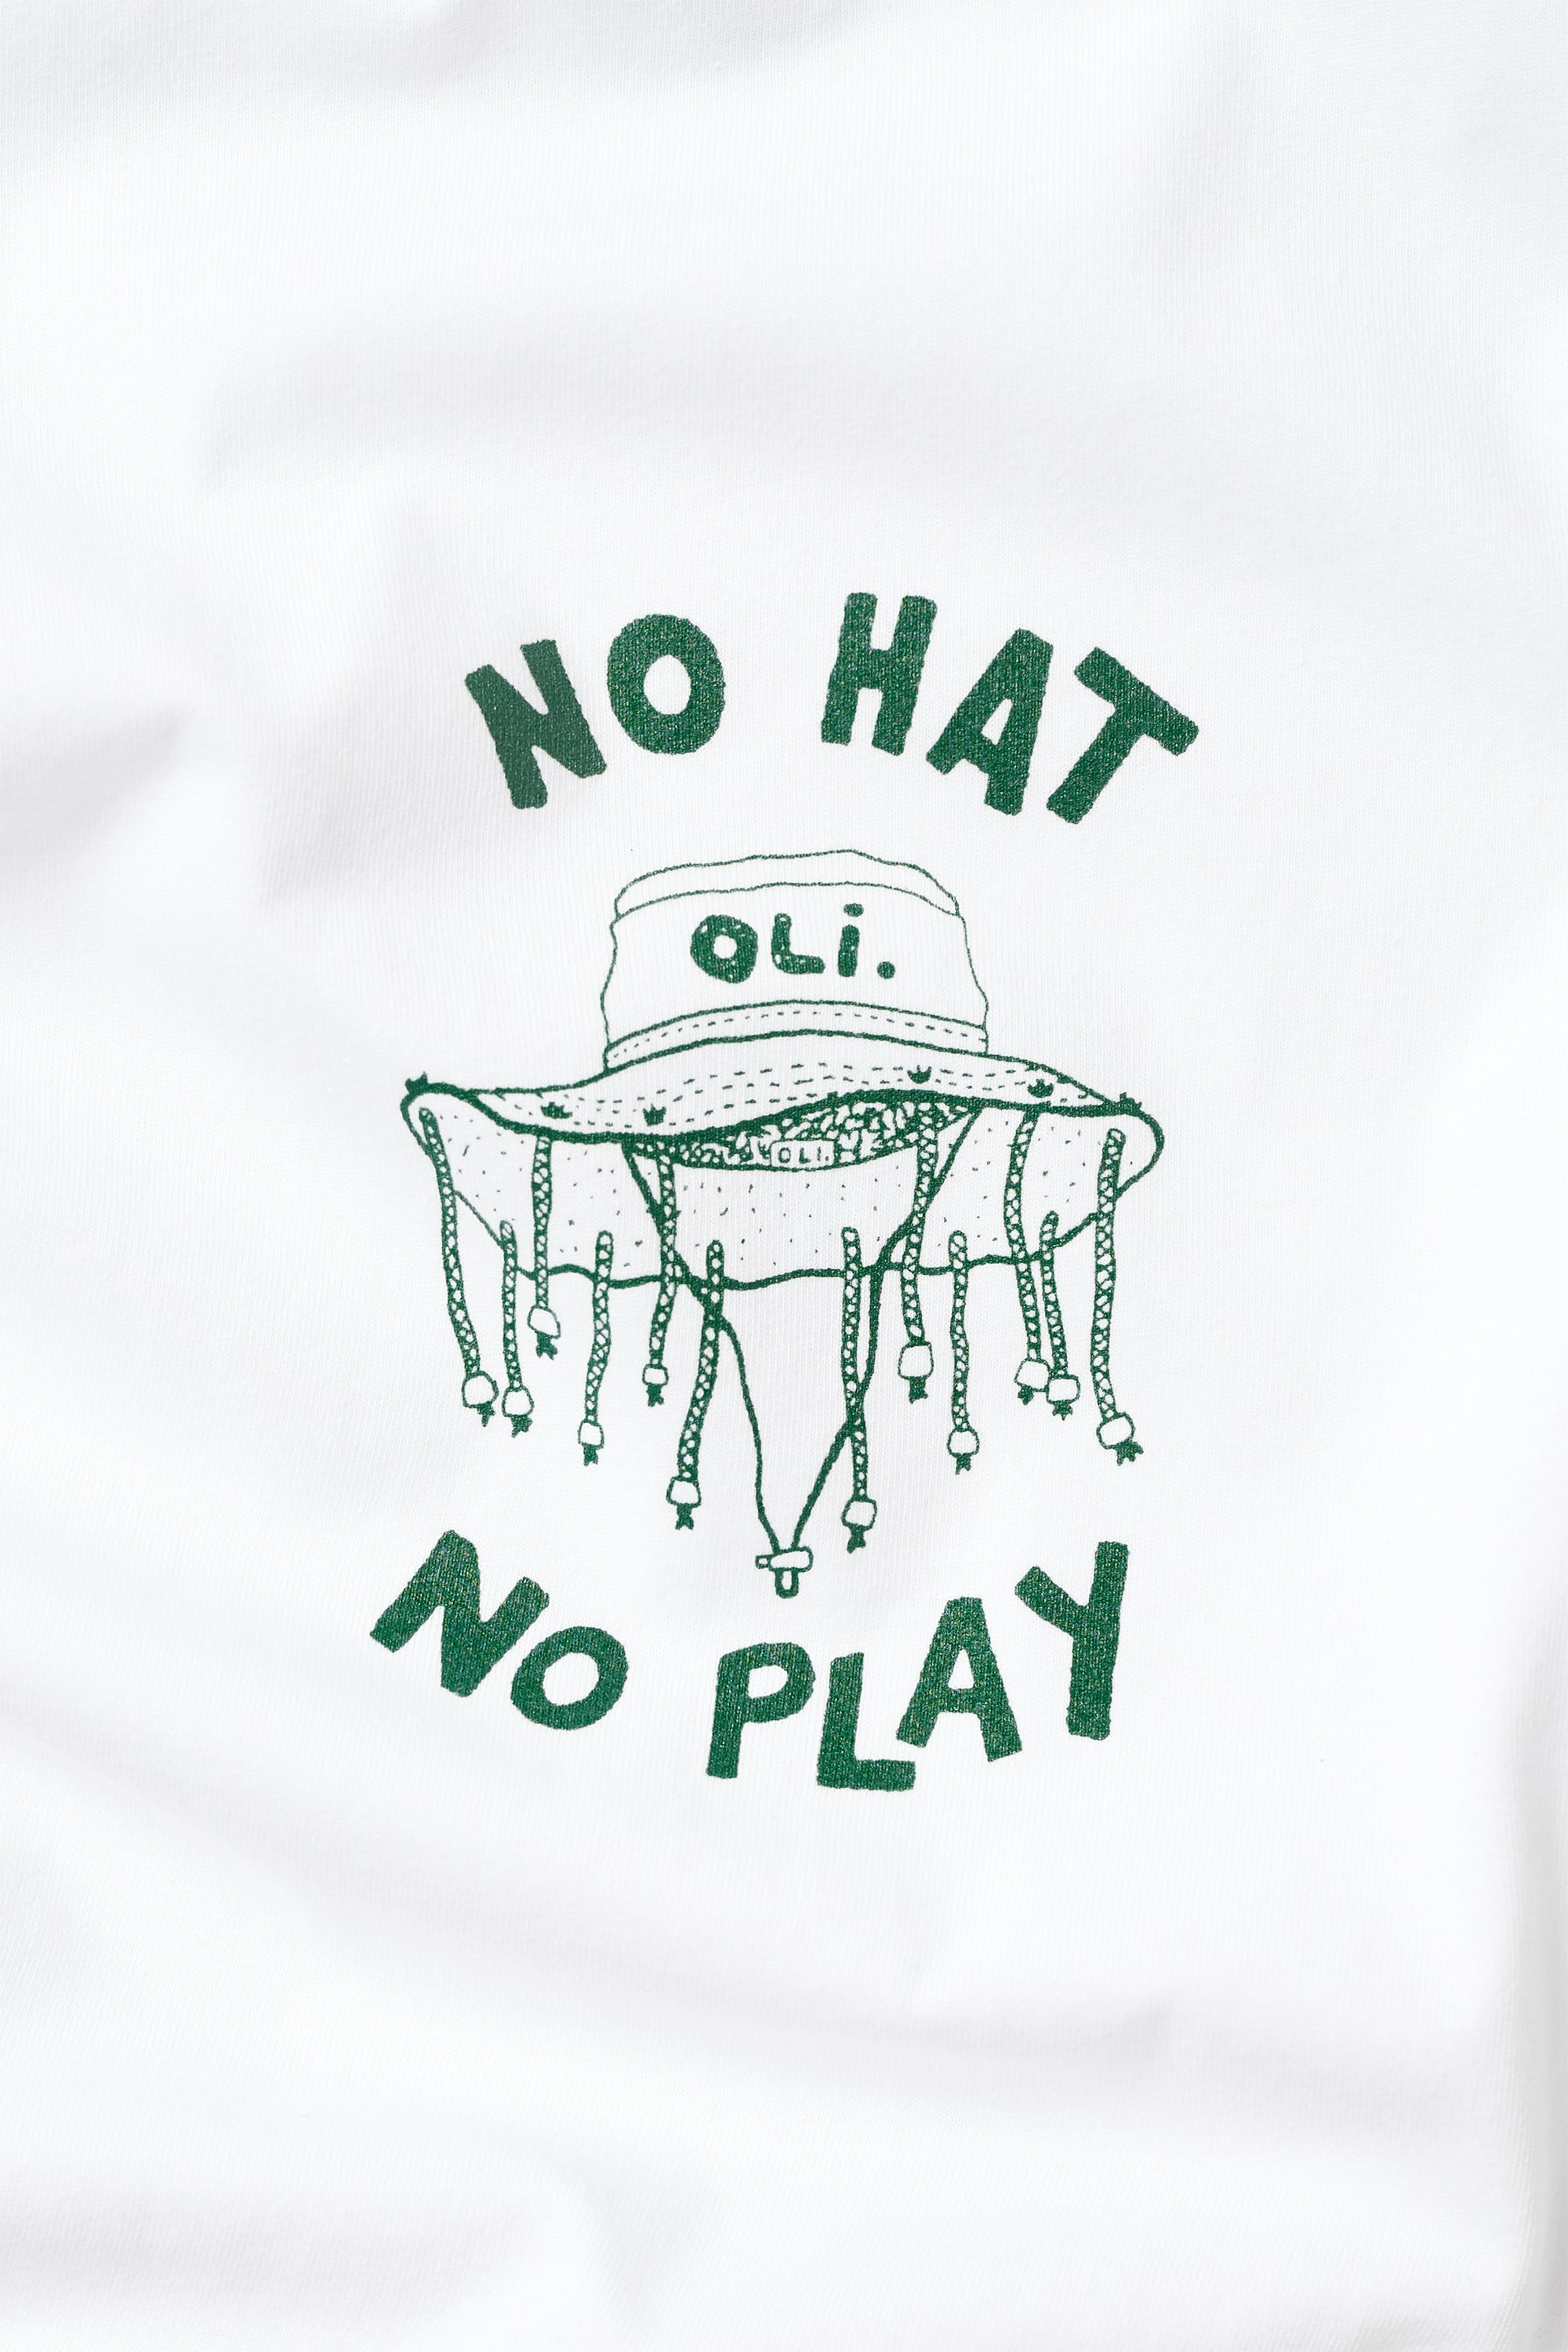 No Hat No Play Crop T - White